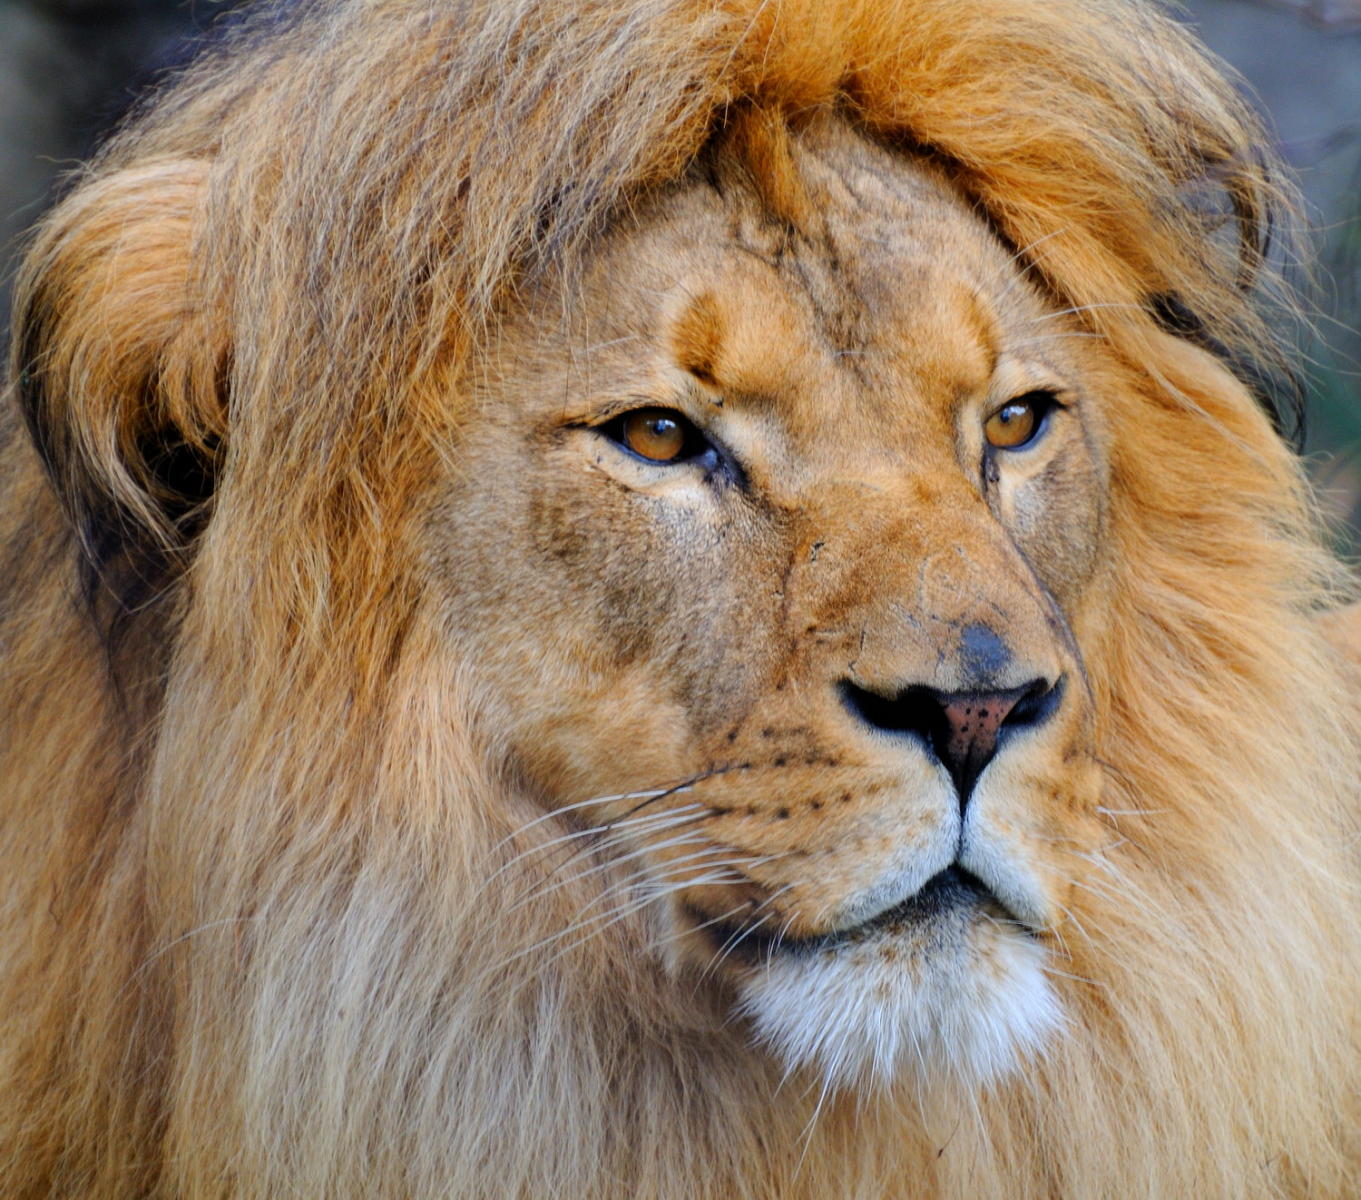 DSC_1528A - Portrait of a Lion